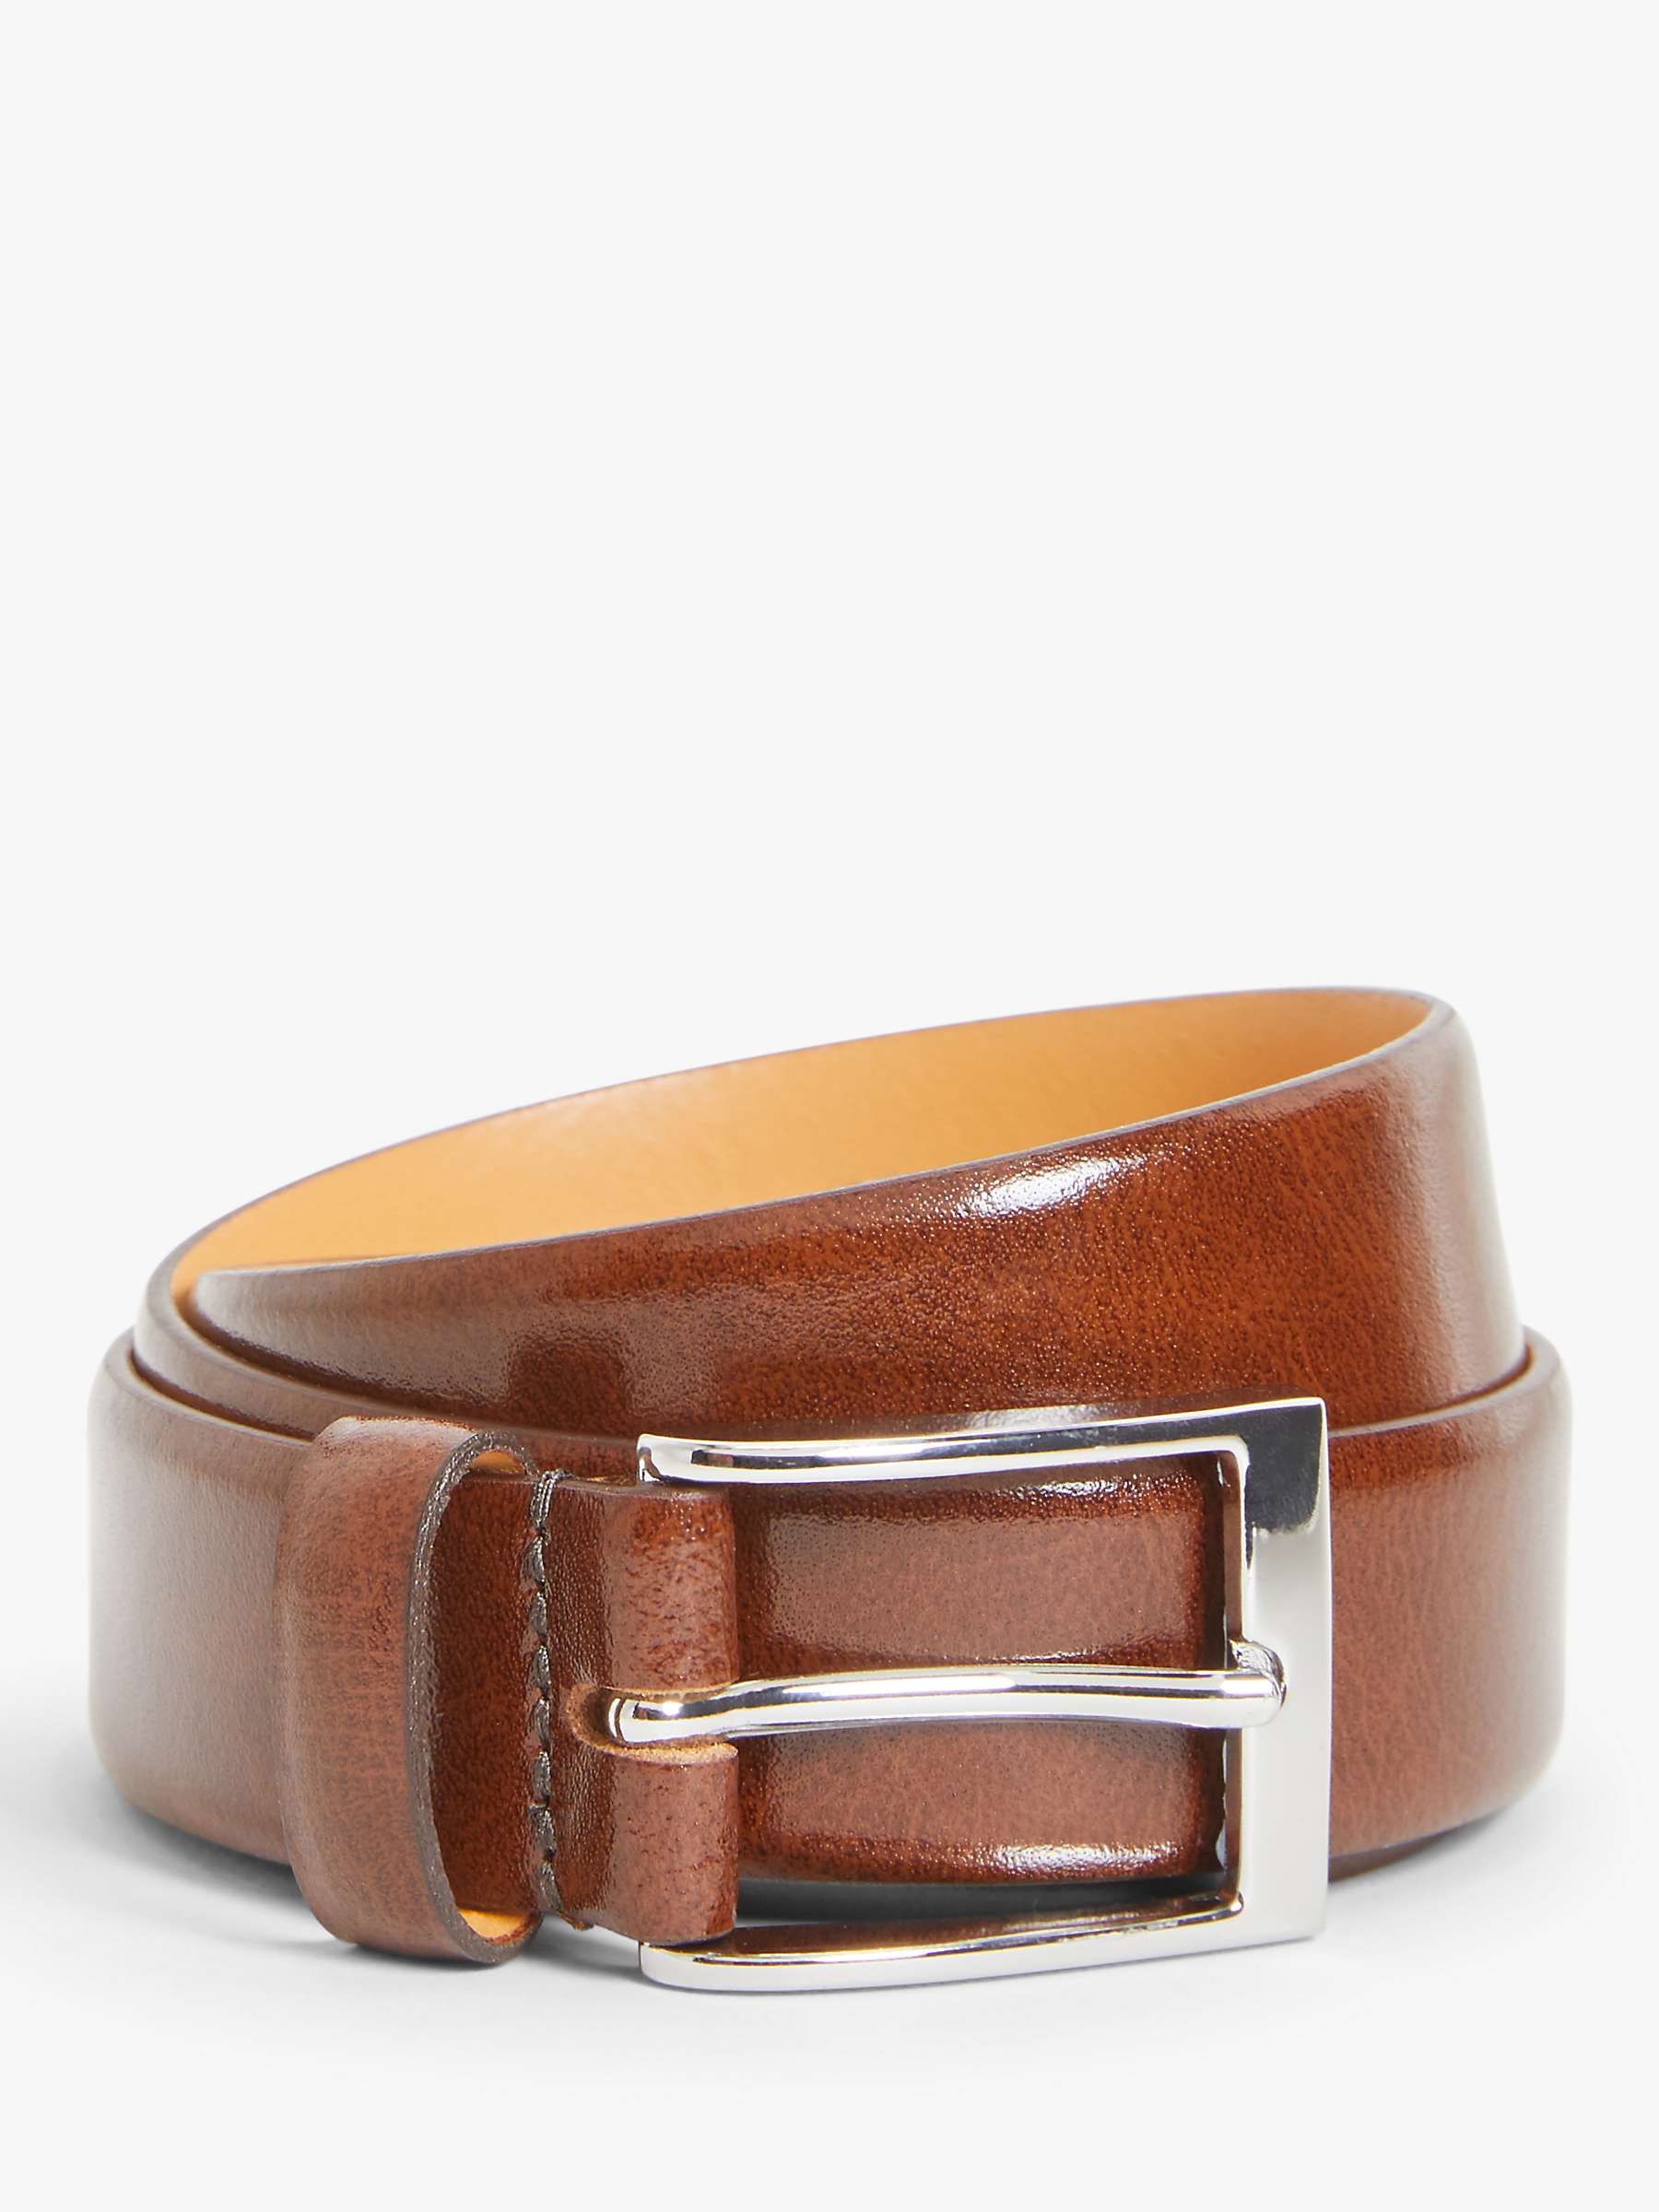 Buy John Lewis Made in England 30mm Formal Leather Belt Online at johnlewis.com